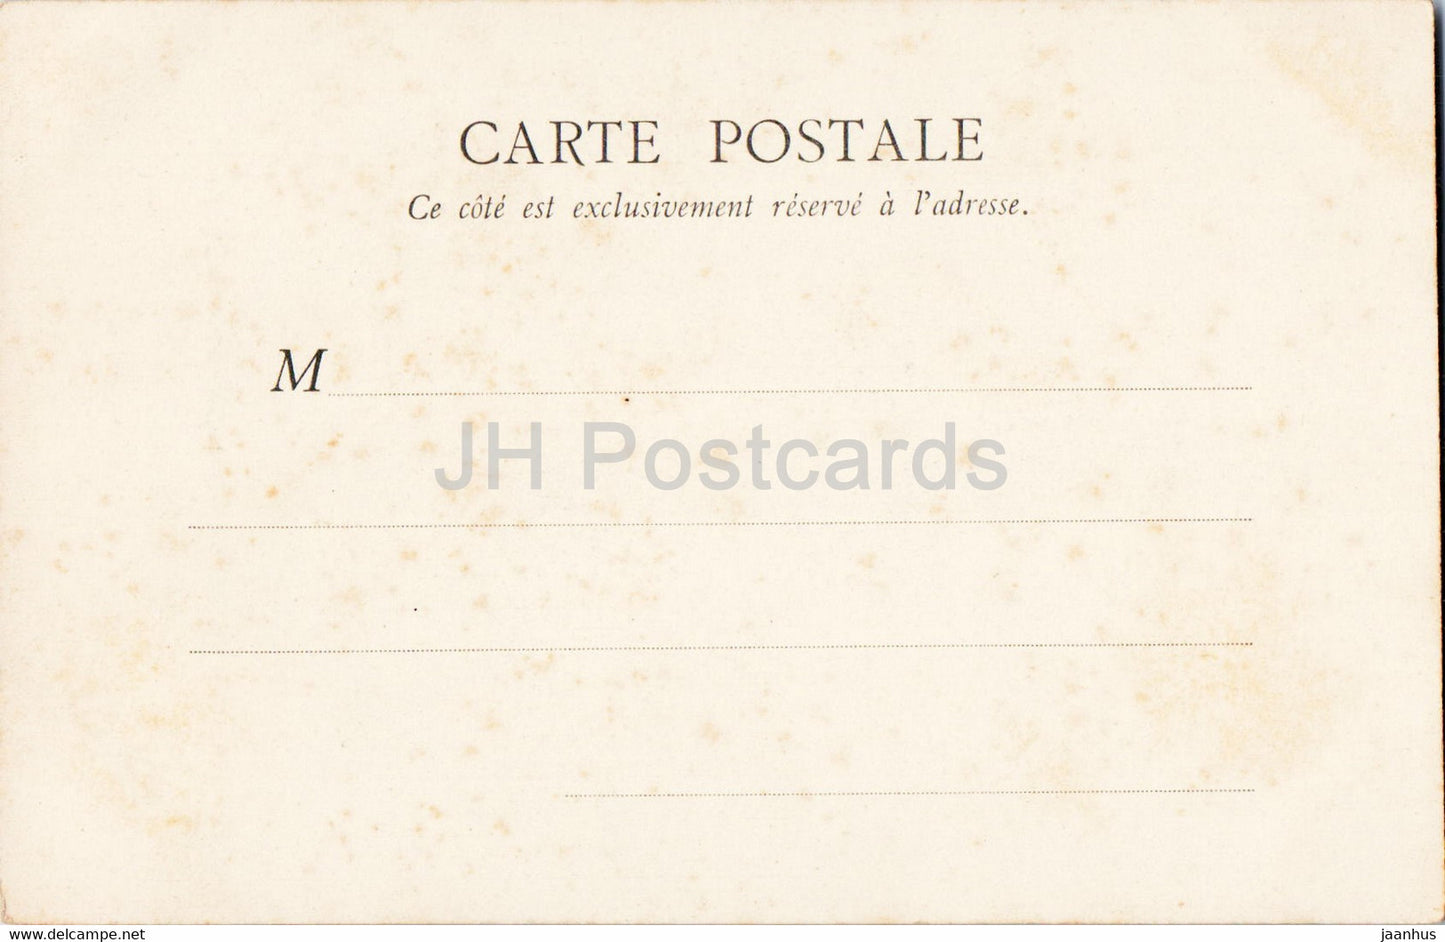 Amiens - Cathédrale - La Facade de cote avec fleche - cathédrale - 52 - carte postale ancienne - France - inutilisée